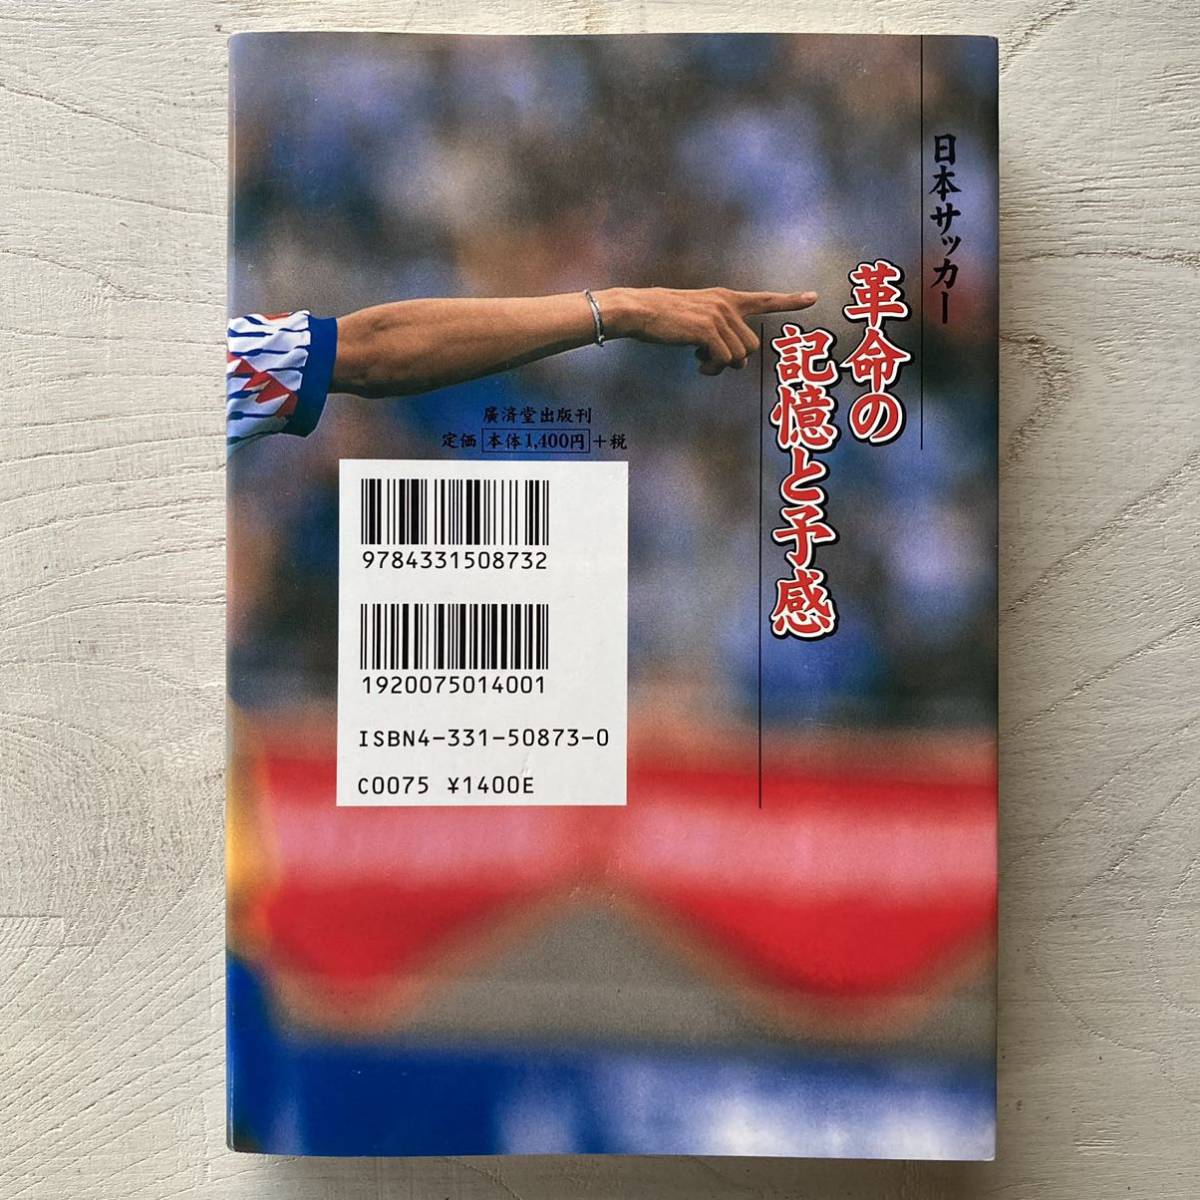 日本サッカー 革命の記憶と予感/柱谷哲二_画像2